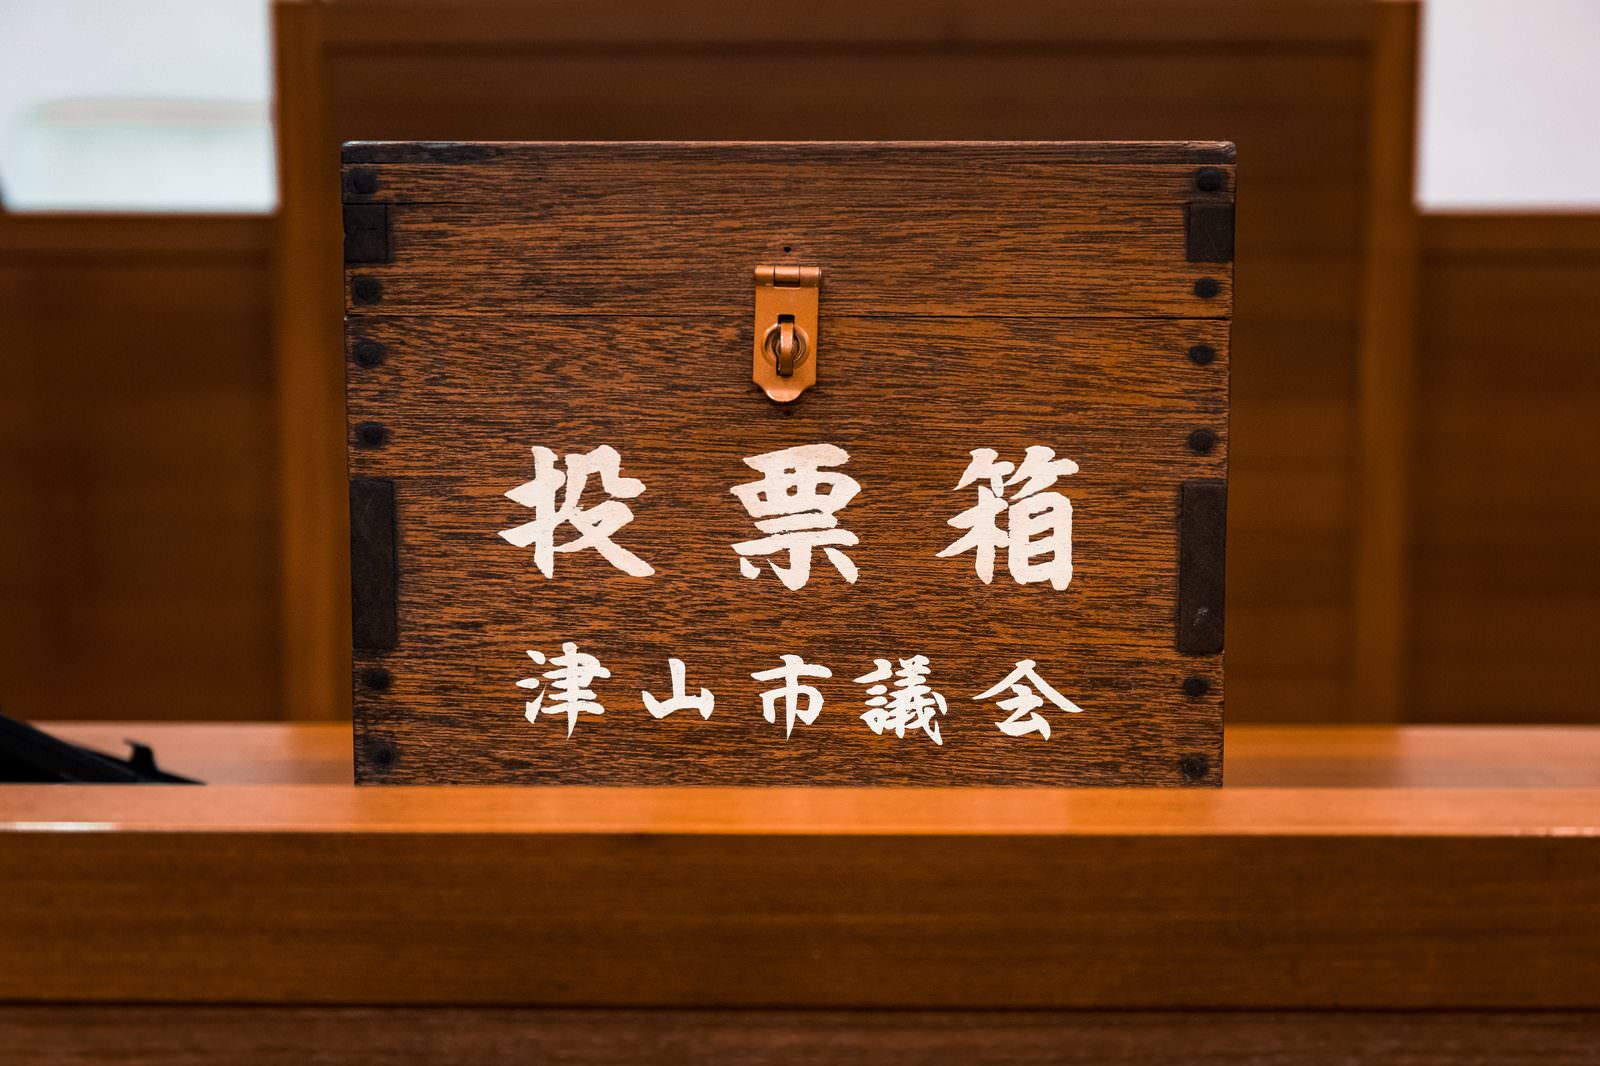 「津山市議会の歴史を知る投票箱 | フリー素材のぱくたそ」の写真